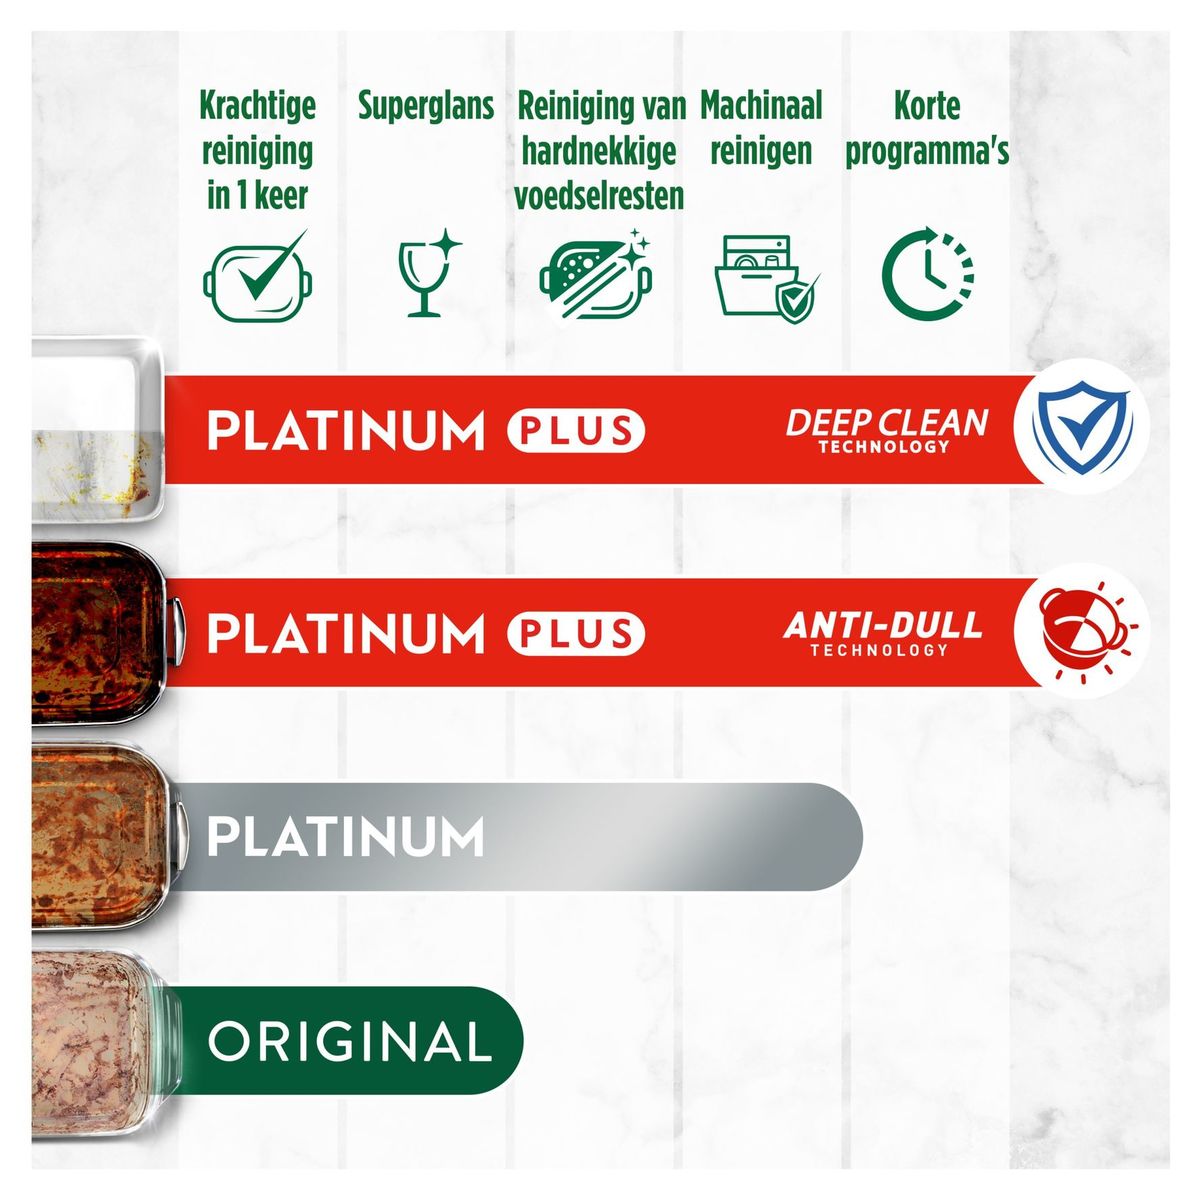 Dreft Platinum Plus All In One Vaatwastabletten Anti-dofheidstechnologie 16X